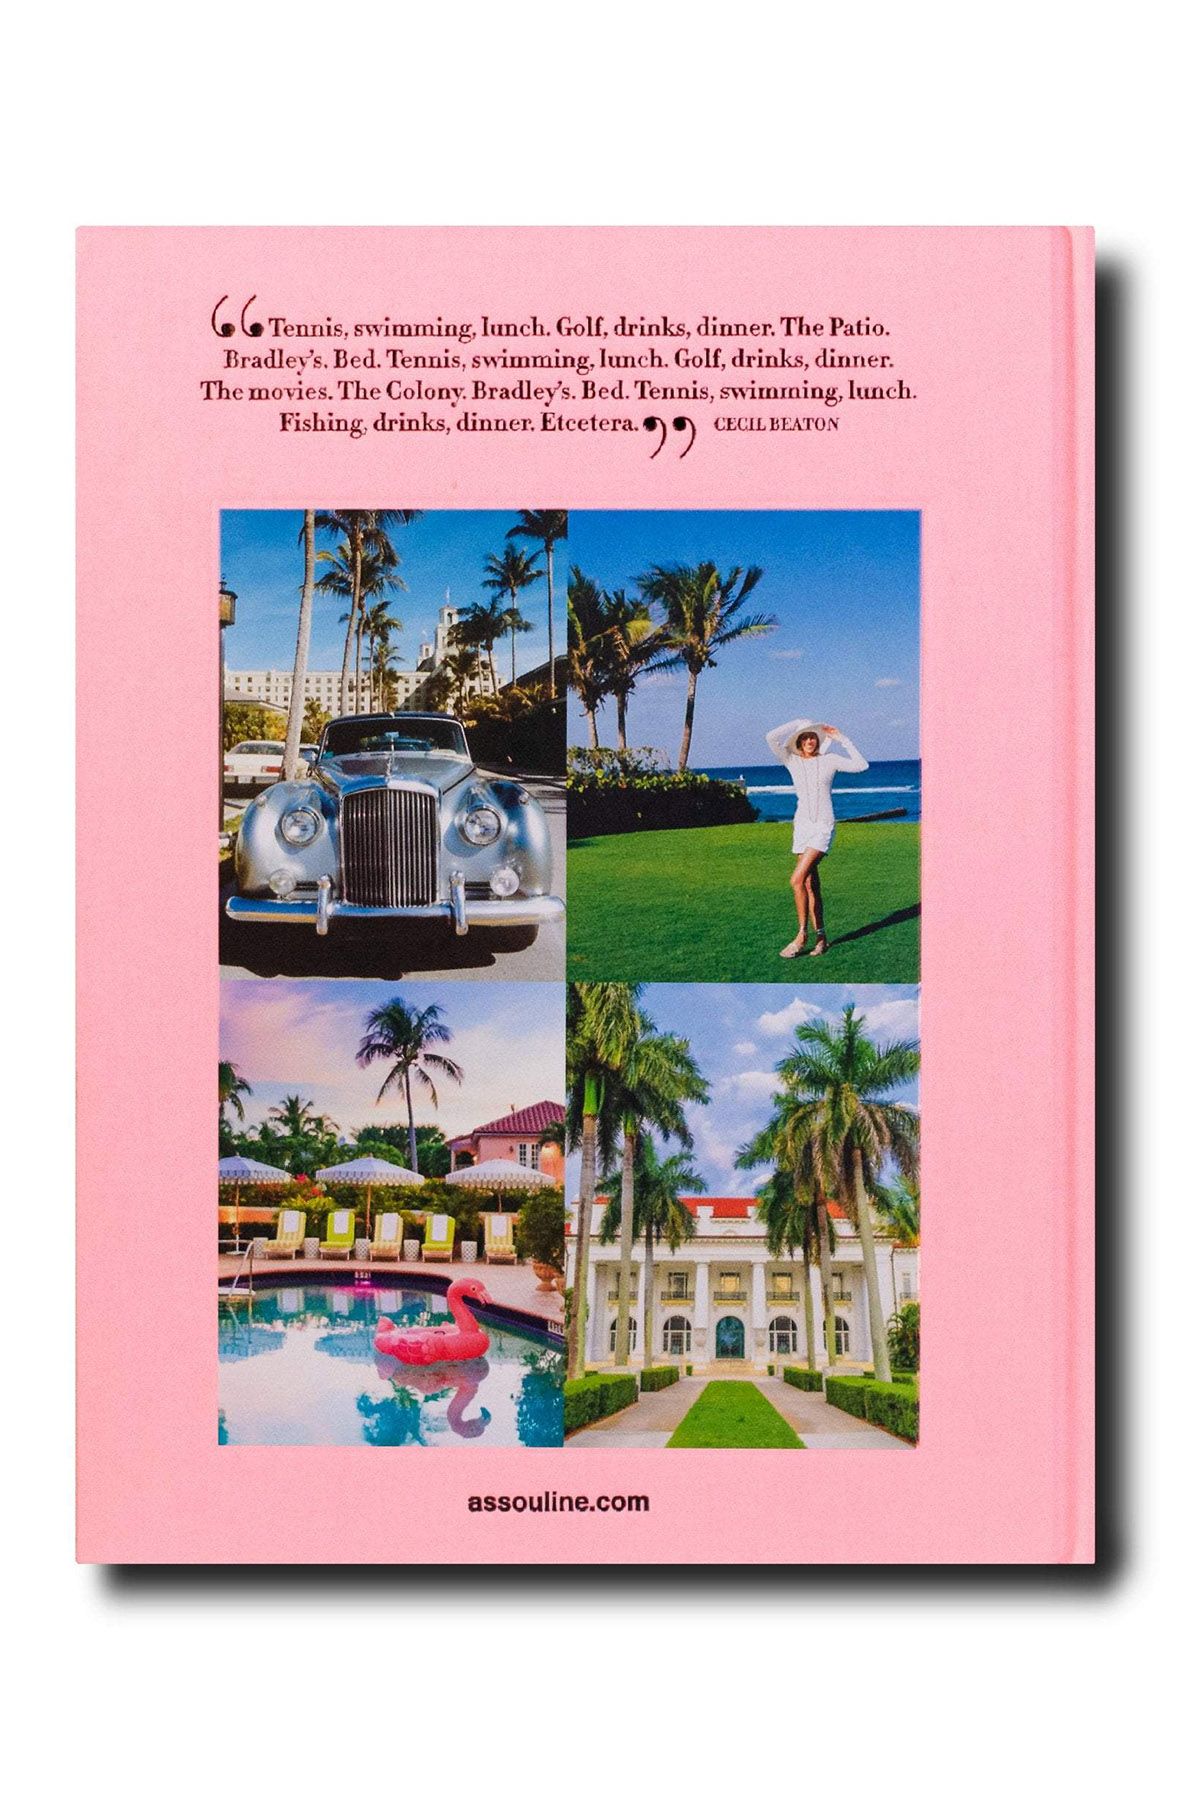 Palm Beach - Linen Hardcover Book